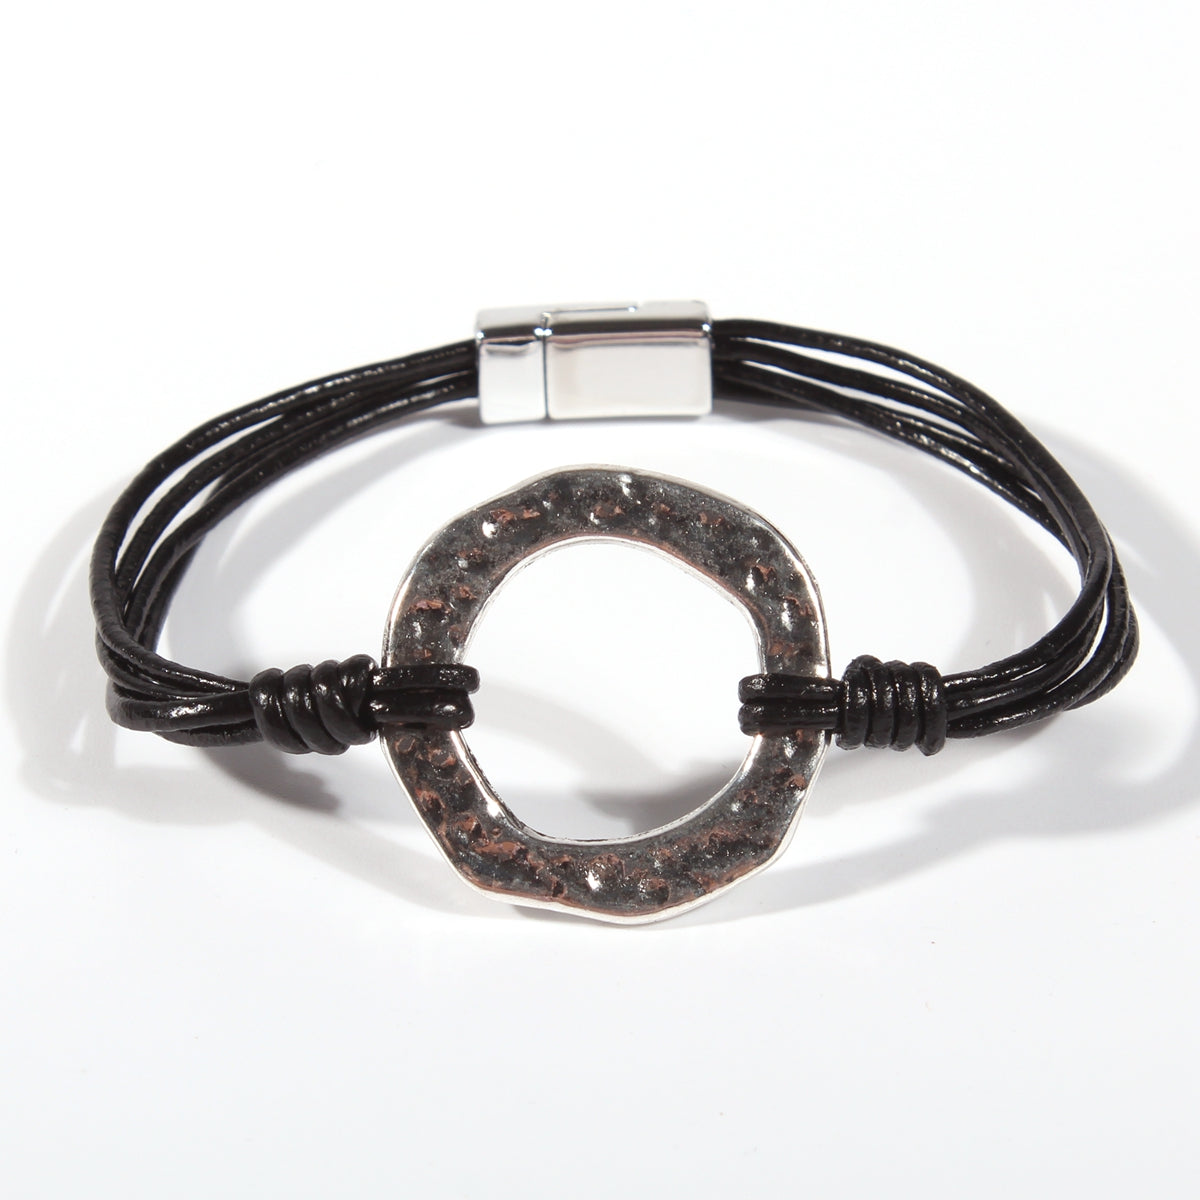 Genuine leather handmade women's bracelet MBR-02